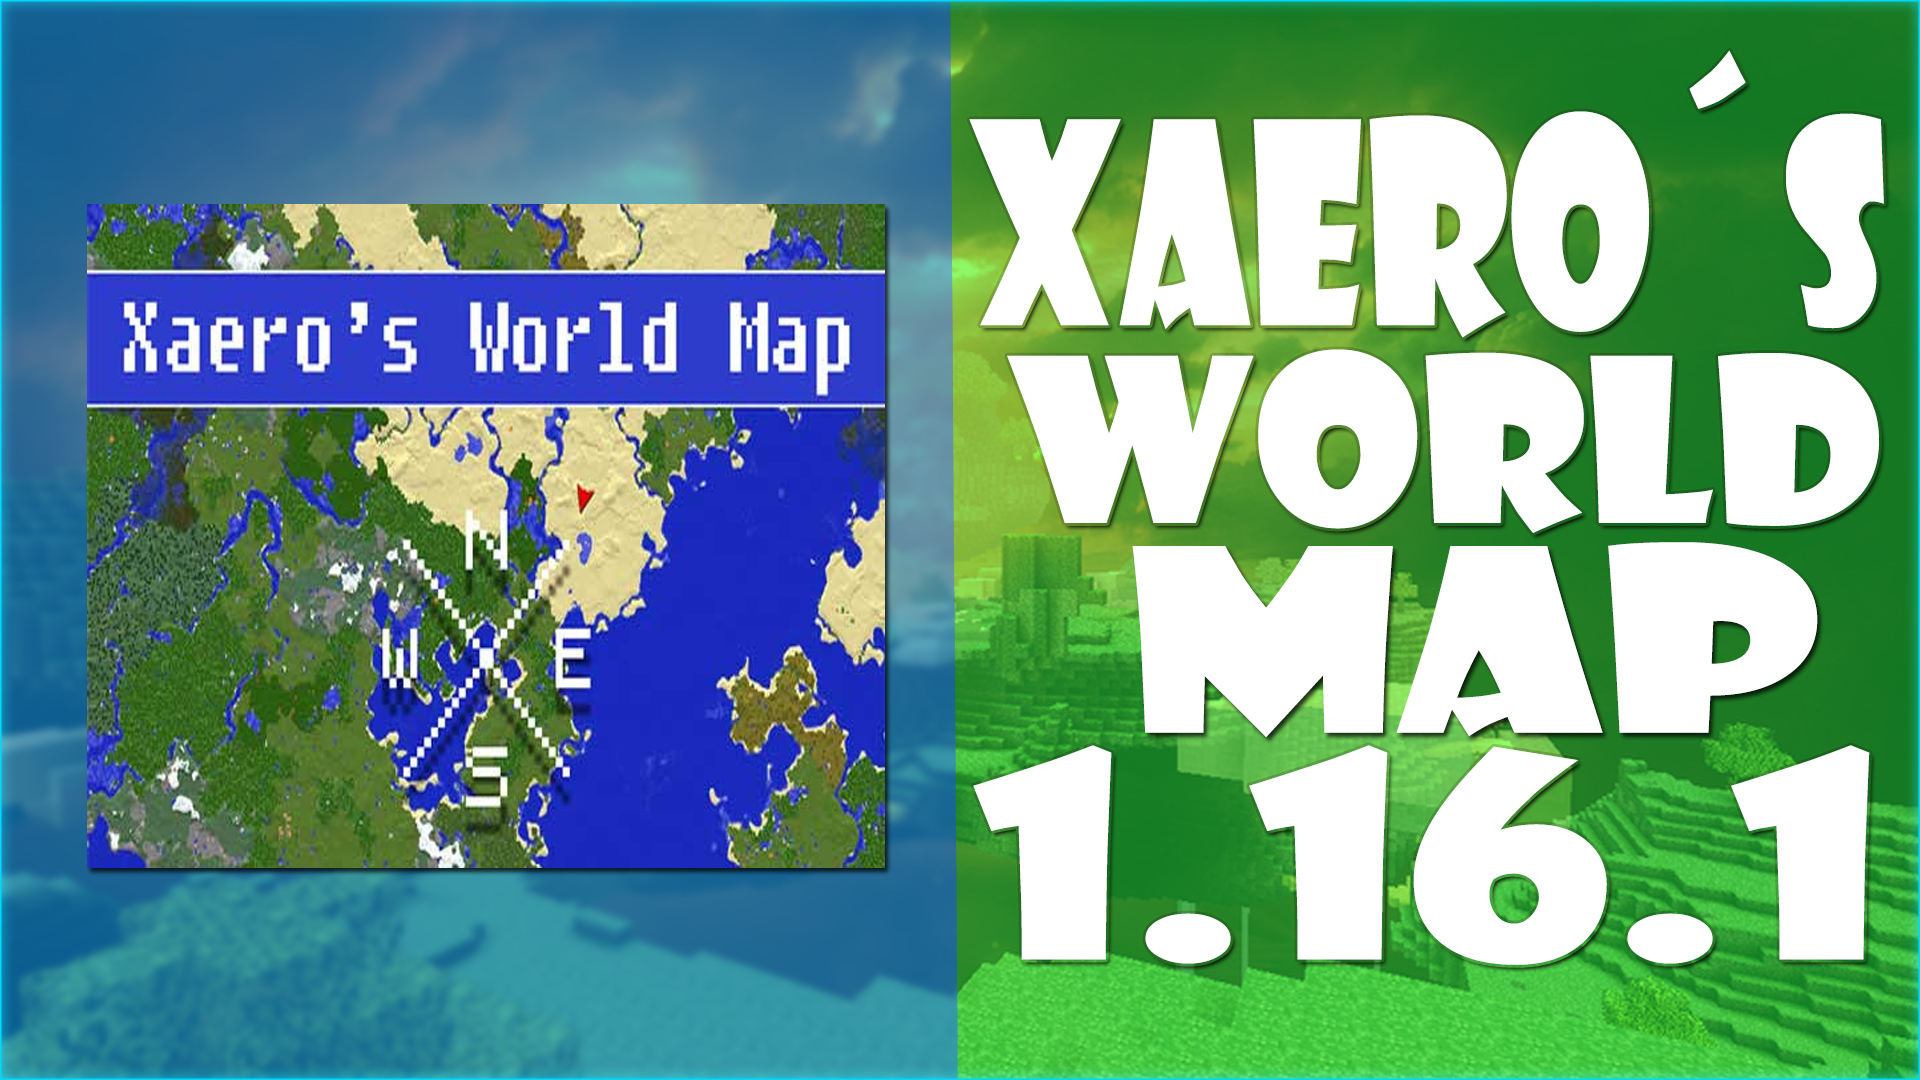 Xaerosworldmap